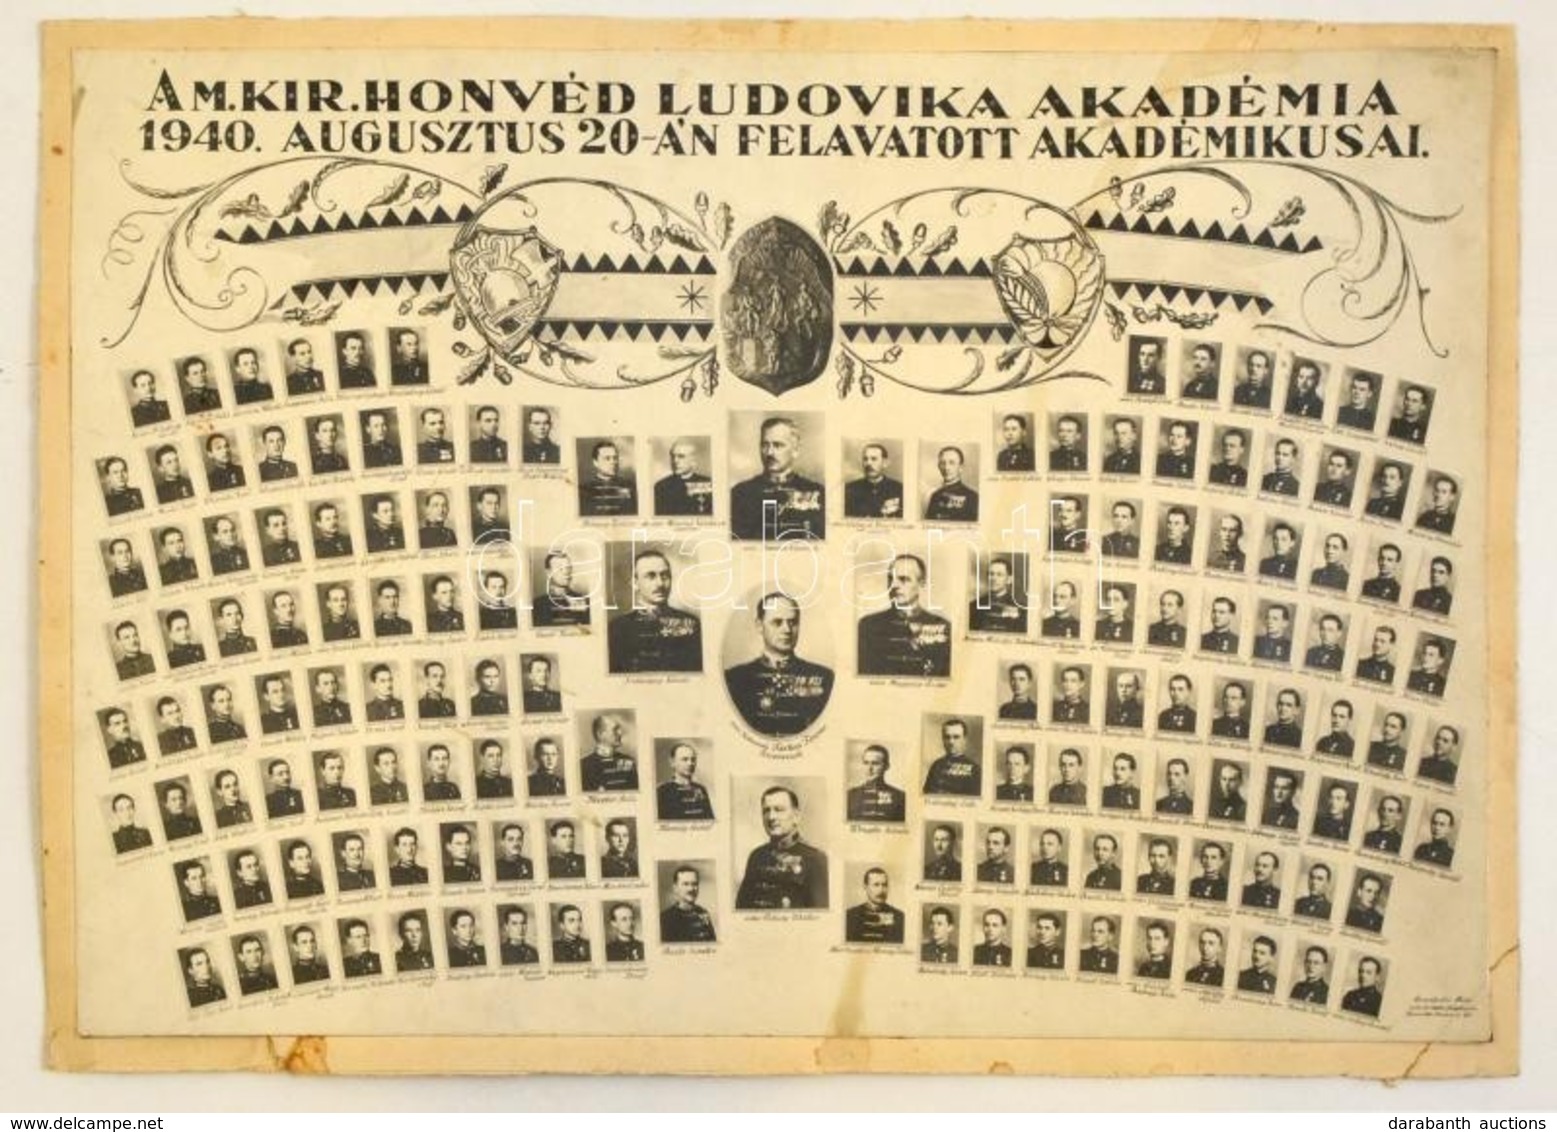 1940 A M. Kir. Ludovika Akadémia 1940. Augusztus 20-án Felavatott Akadémikusai, Tablókép, Brunhuber Béla, Budapest, Kart - Non Classés